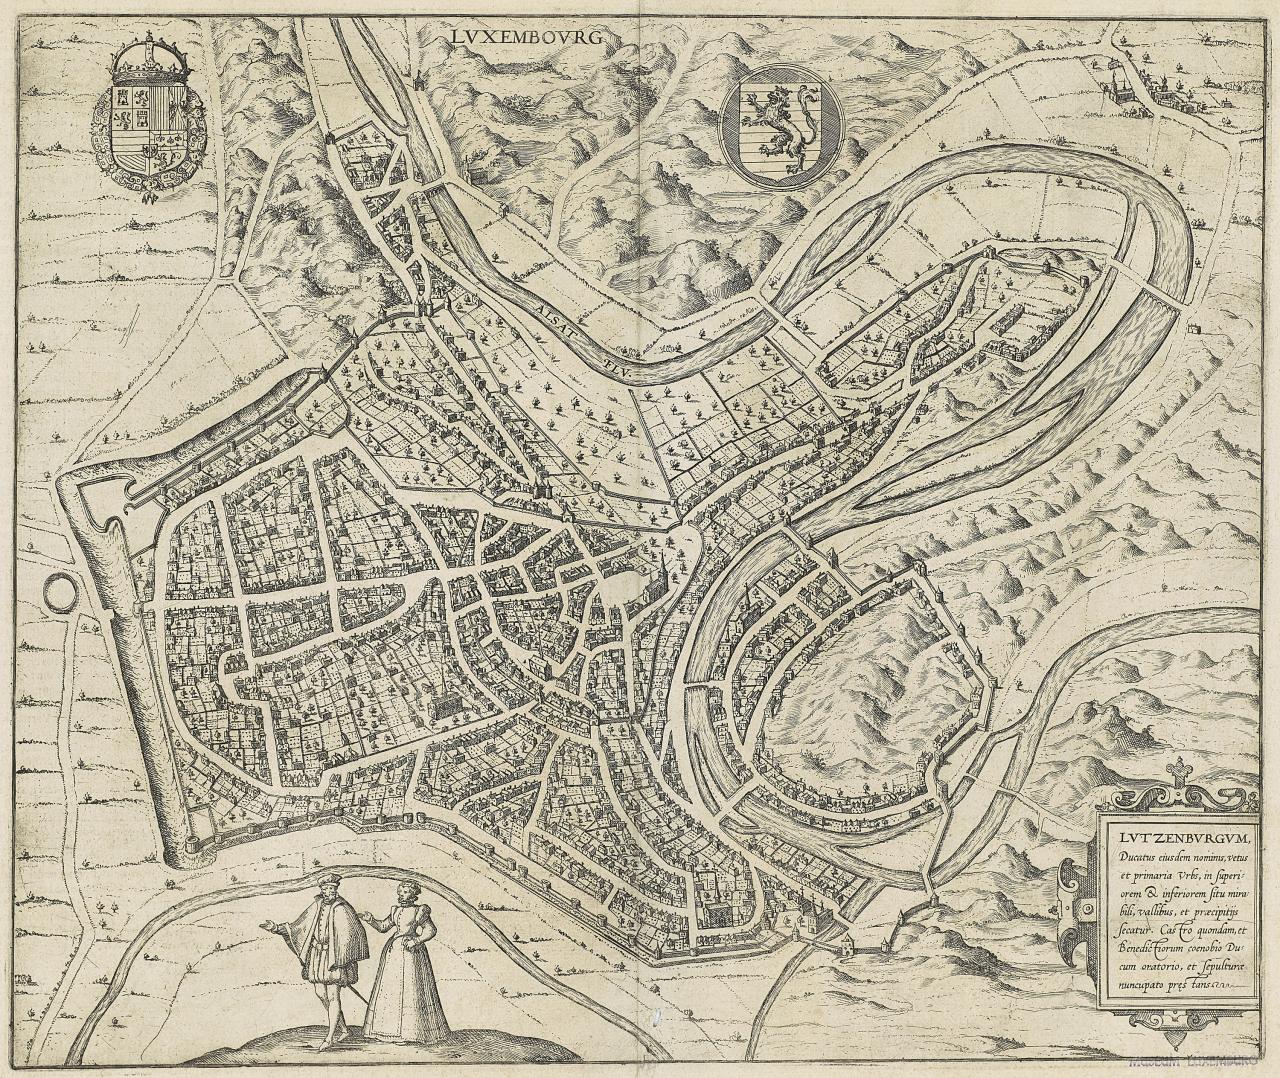 Plan de la Ville de Luxembourg datant de 1581 